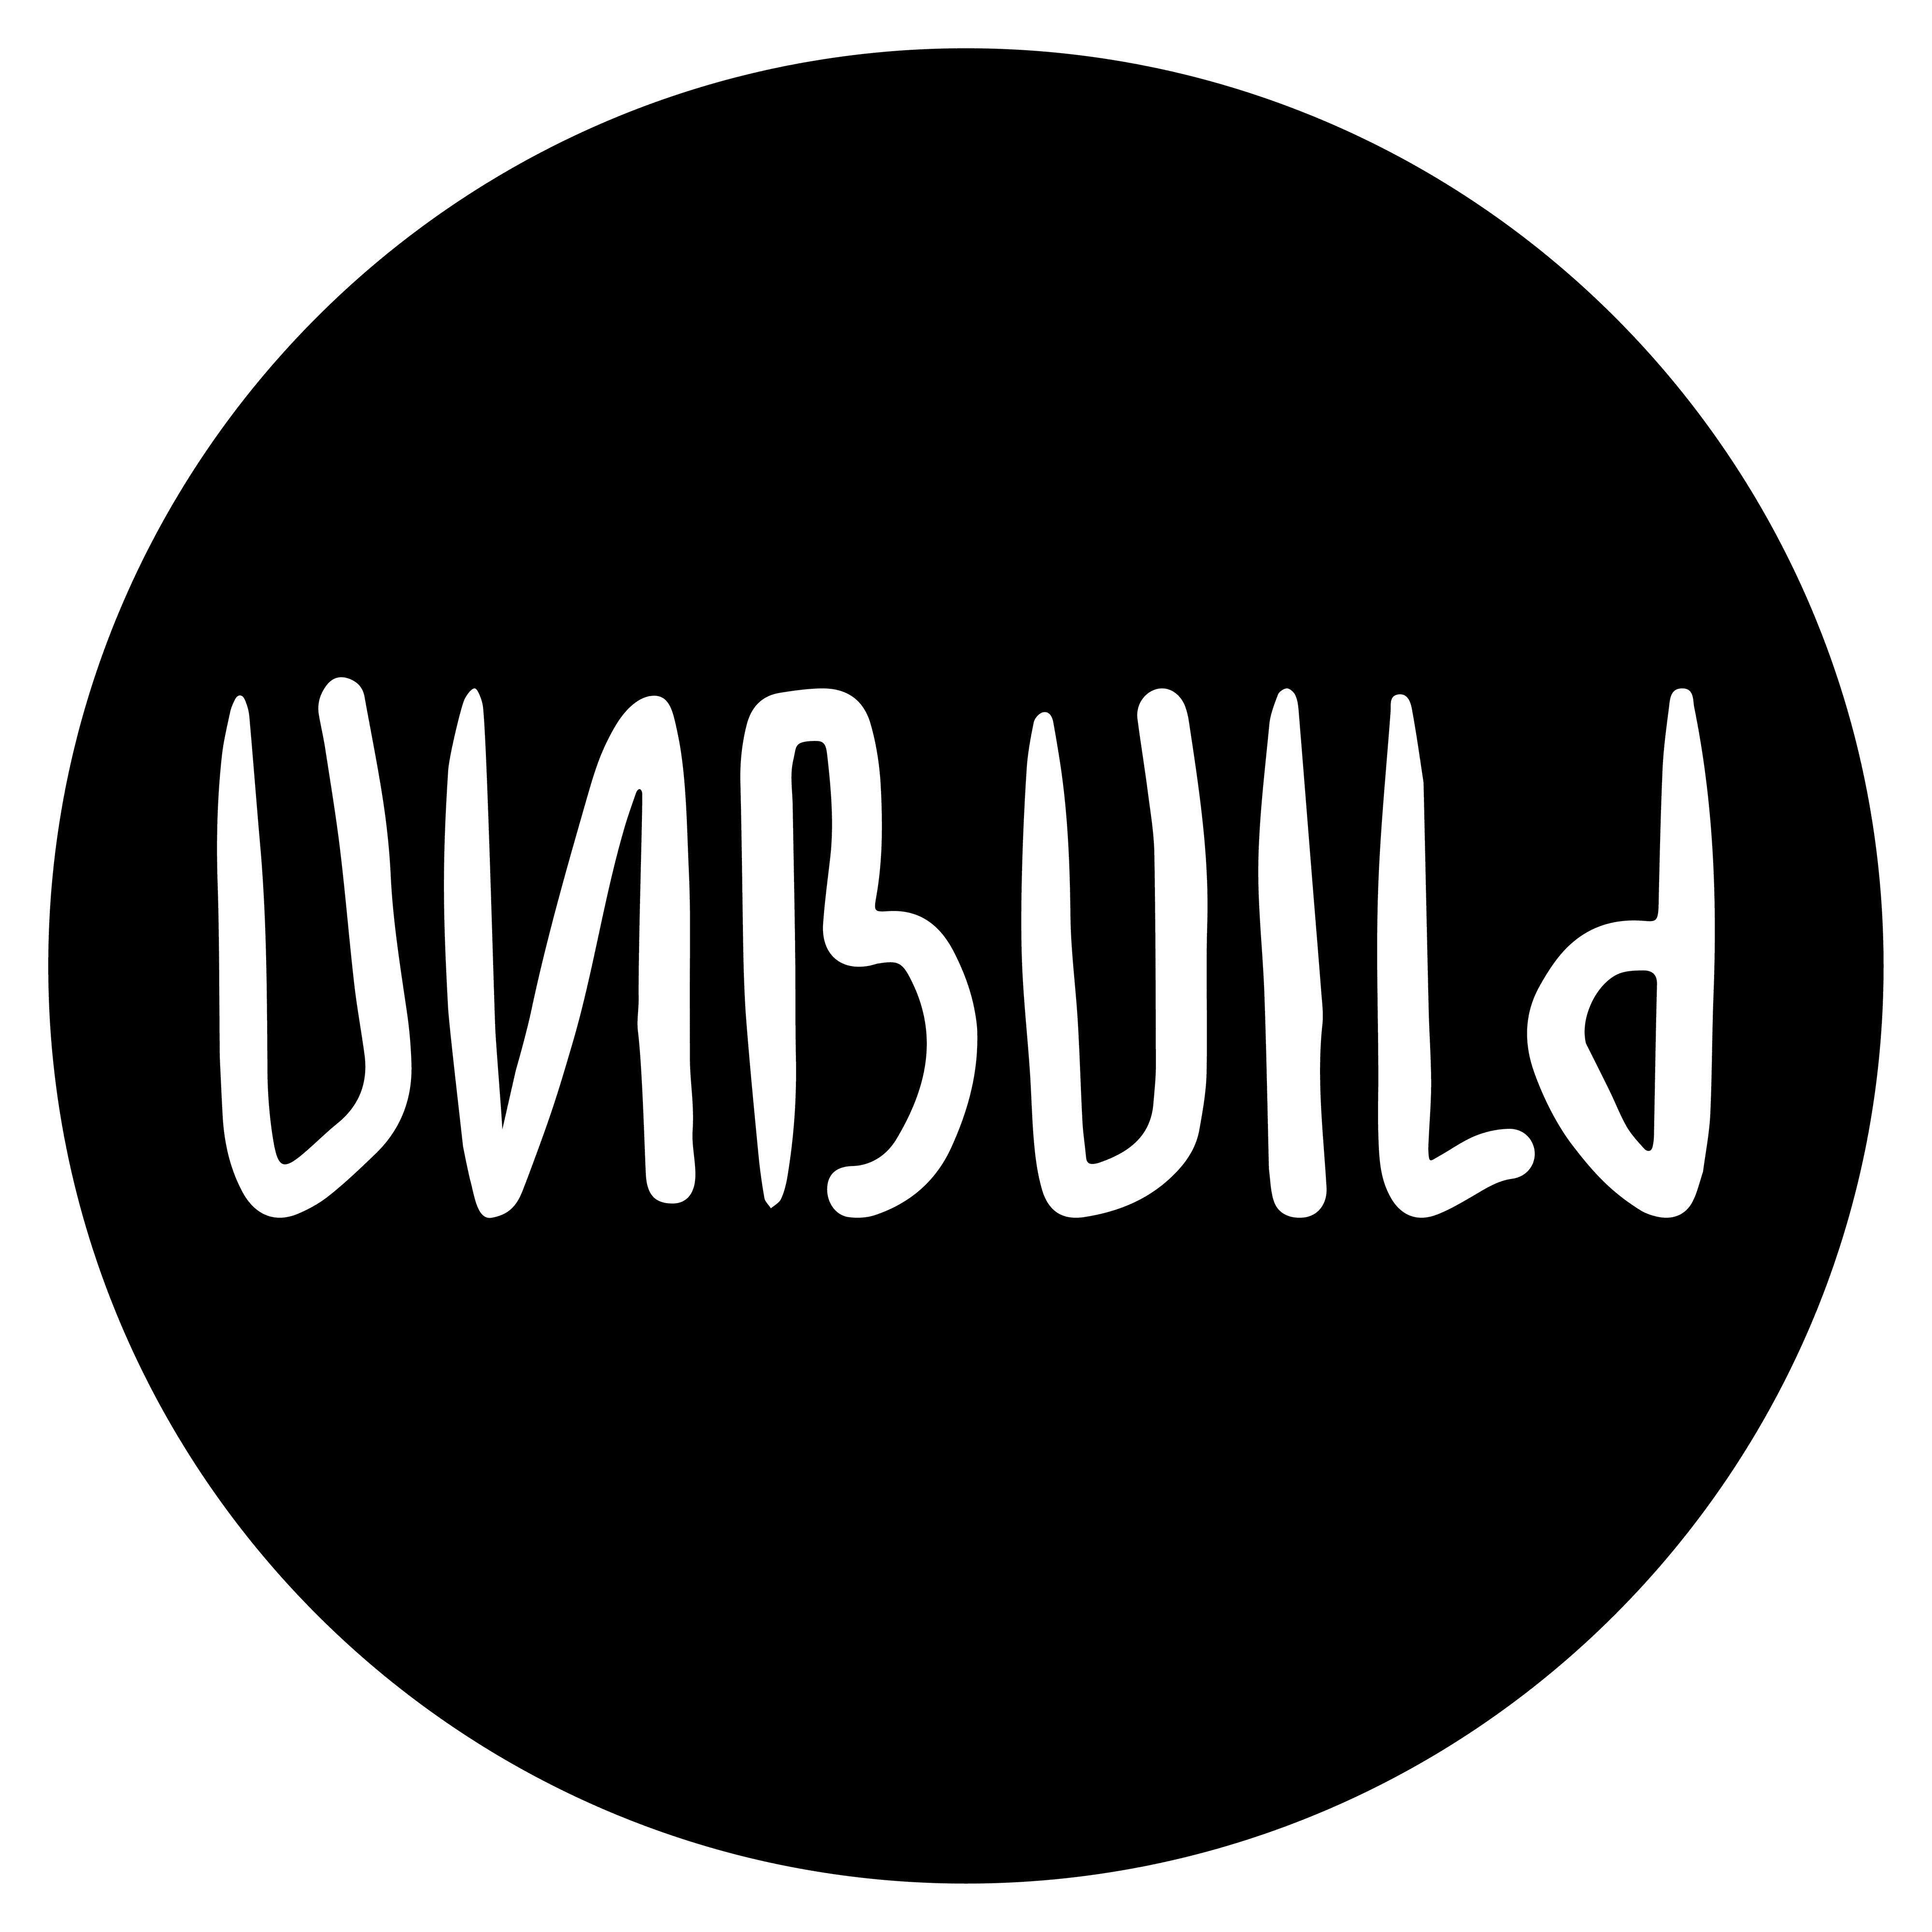 unbuild